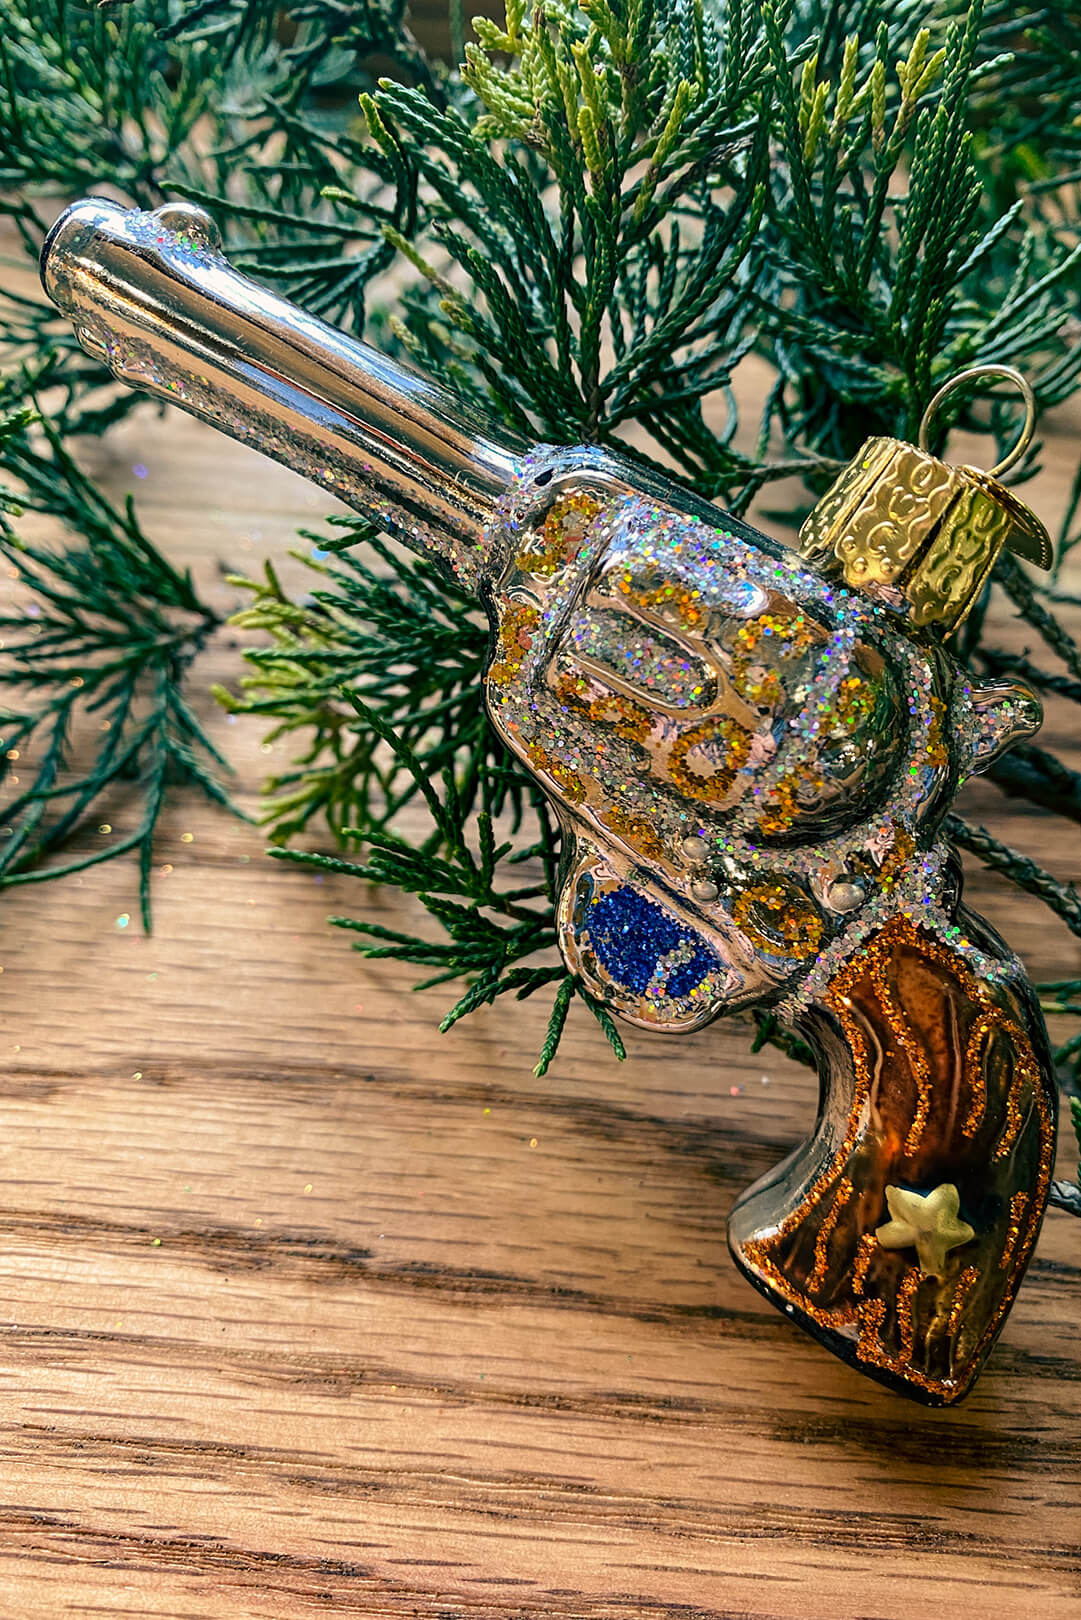 Western Revolver Ornament